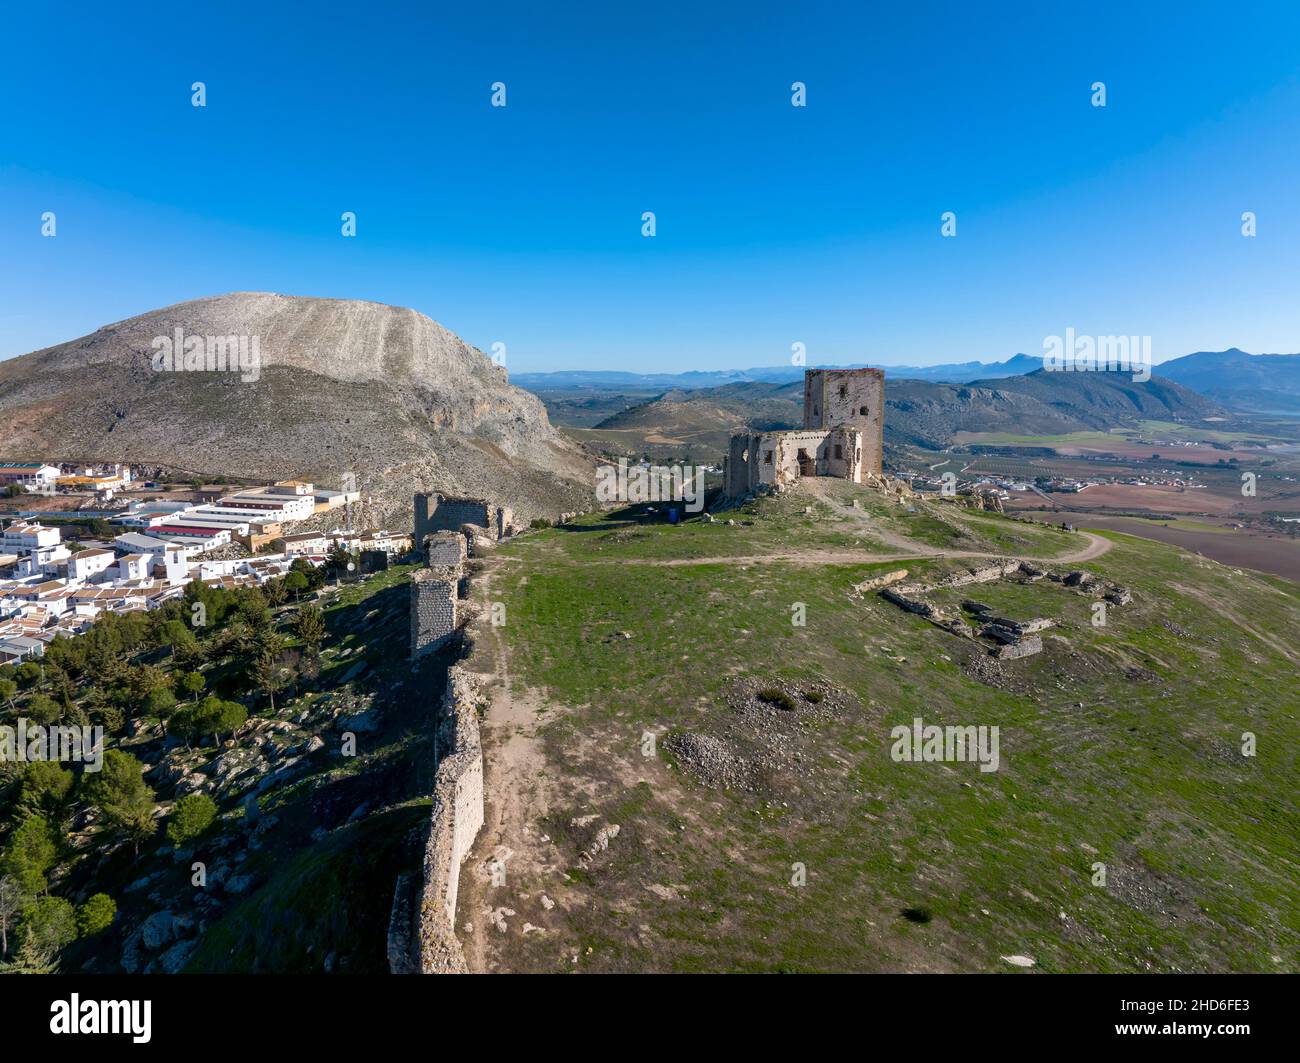 Rovine del castello Almohad della stella nel comune di Teba, provincia di Malaga, Spagna. Foto Stock